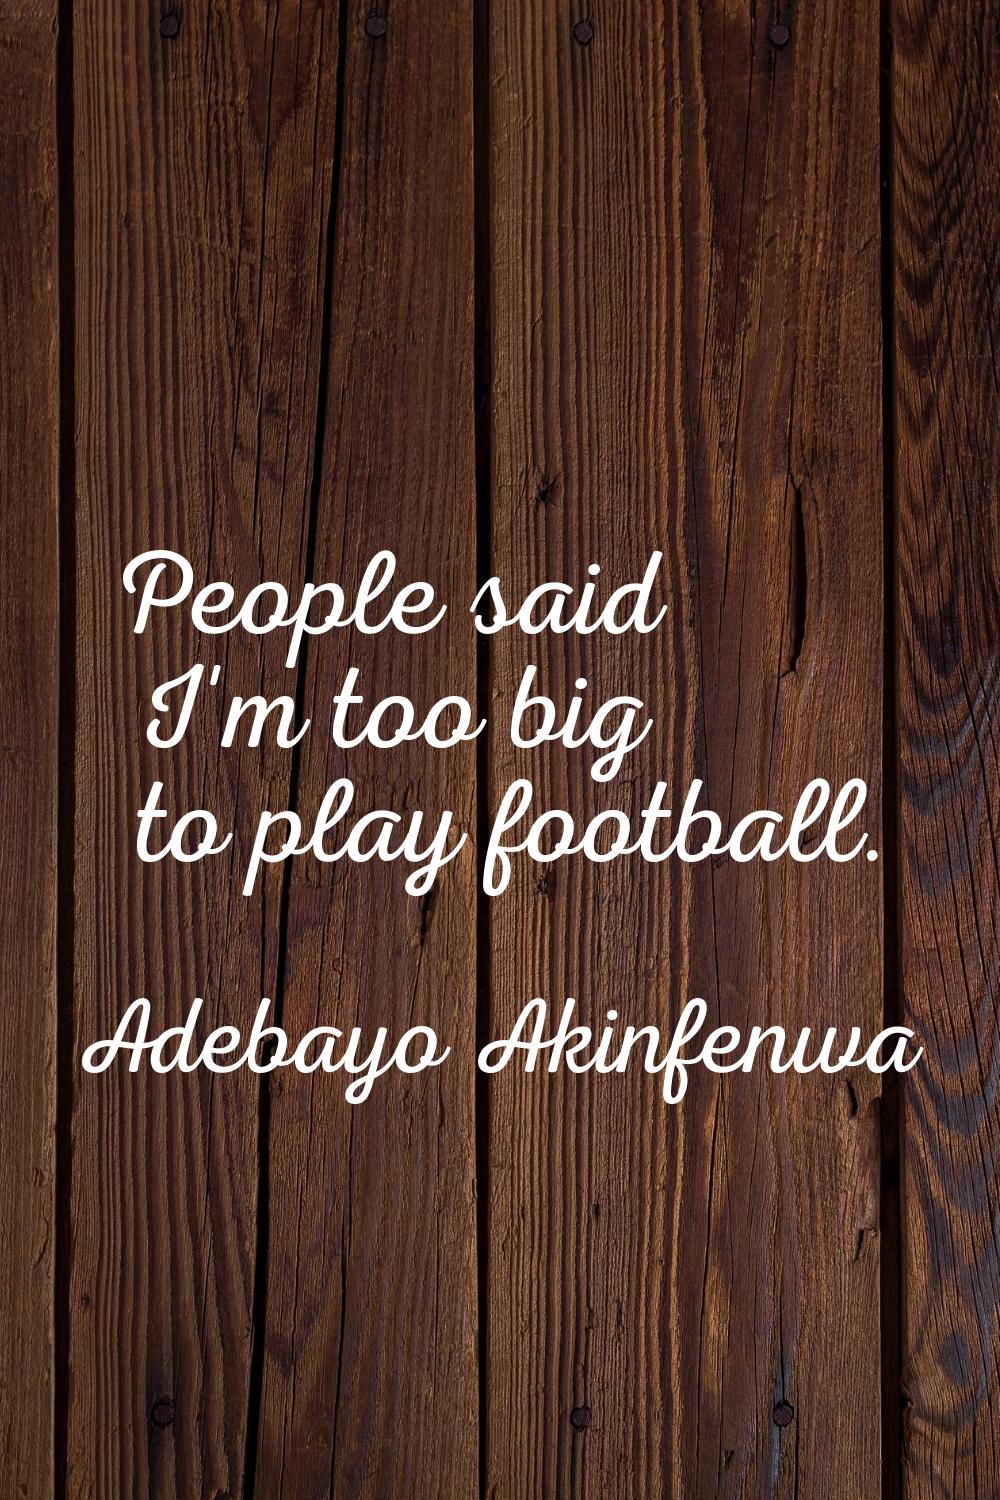 People said I'm too big to play football.